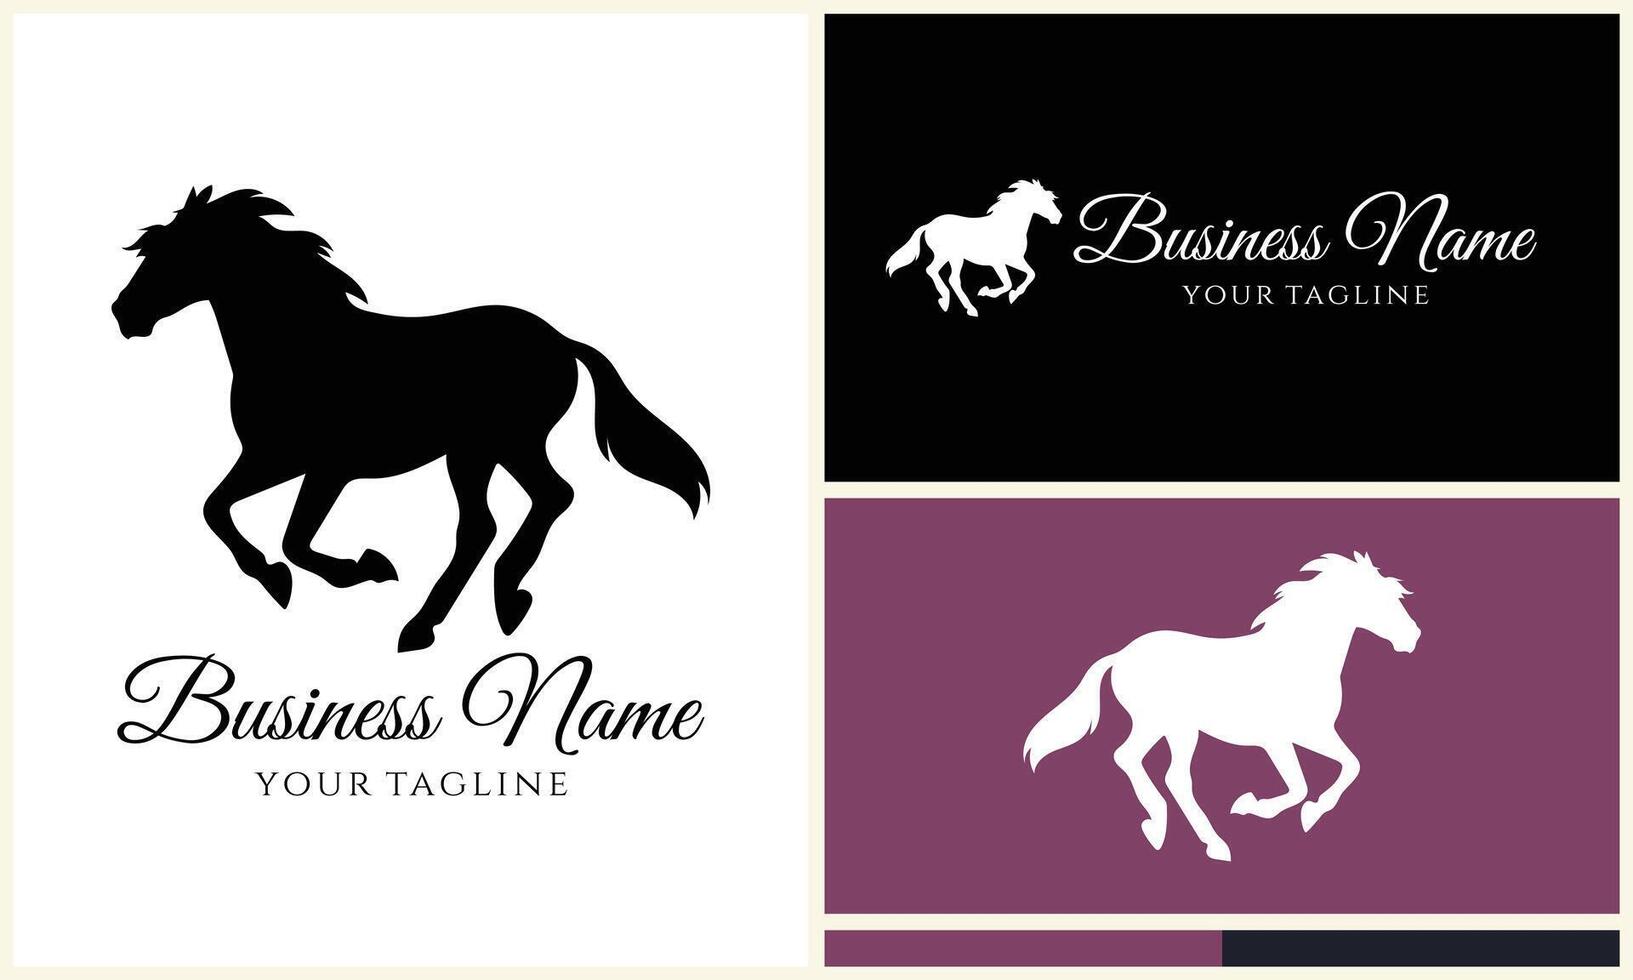 vector horse silhouette logo template